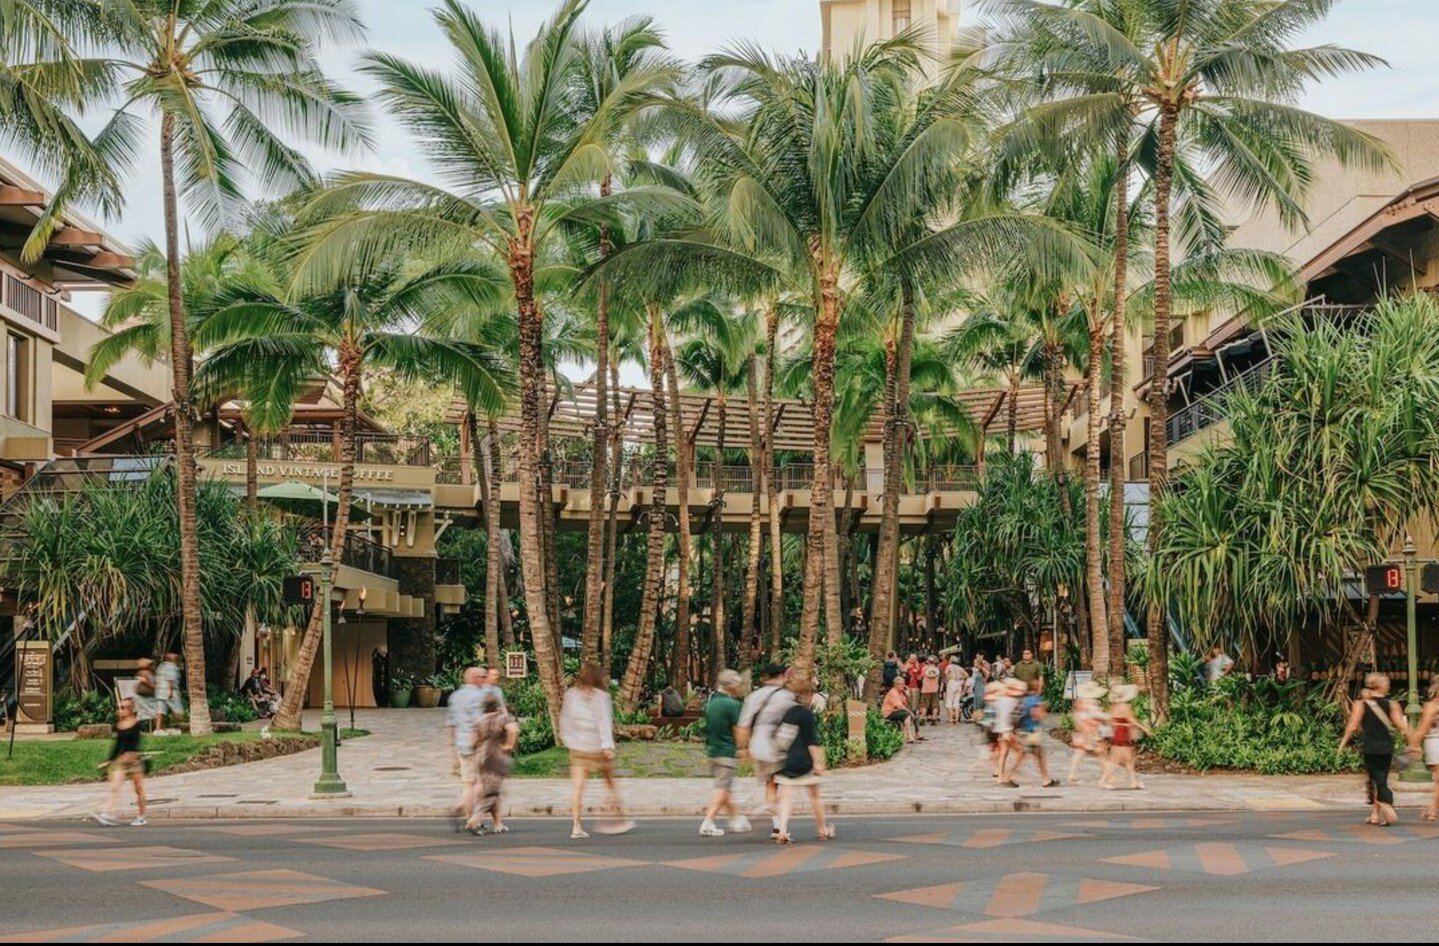 カラカウア通りでの究極のショッピング体験をお楽しみください。ハワイの活気あふれるスピリットとラグジュアリーな雰囲気が融合した、ロイヤル・ハワイアン・センター 。ワールドクラスのショッピングとエキサイティングな文化体験、まさにパラダイスに浸ってください。